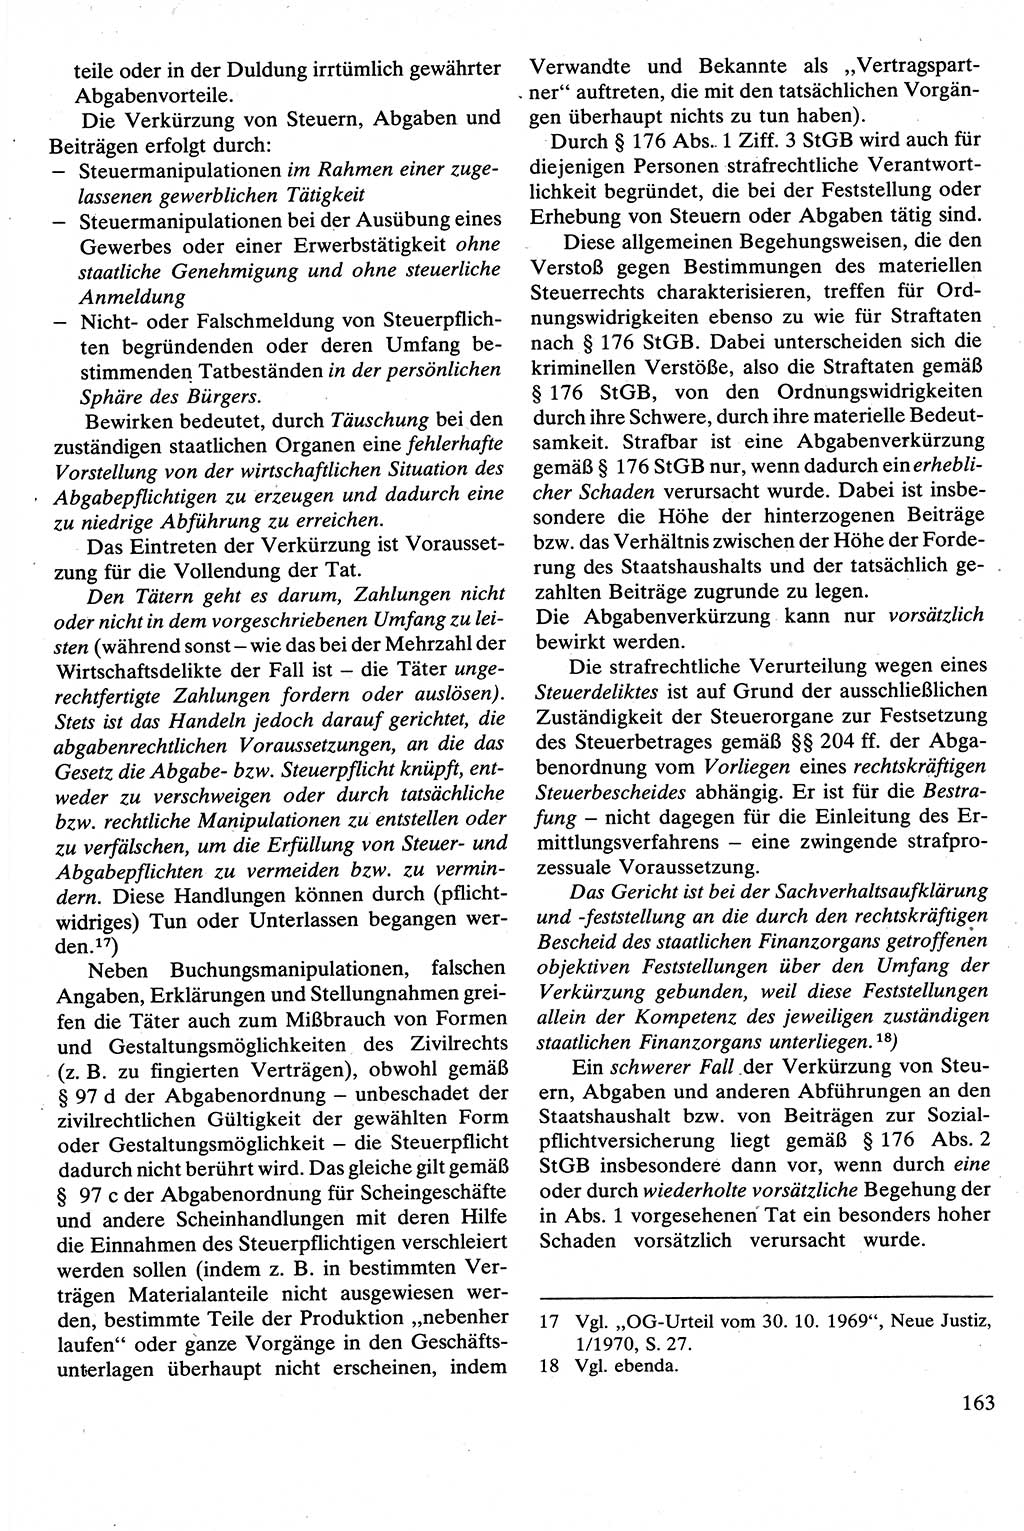 Strafrecht [Deutsche Demokratische Republik (DDR)], Besonderer Teil, Lehrbuch 1981, Seite 163 (Strafr. DDR BT Lb. 1981, S. 163)